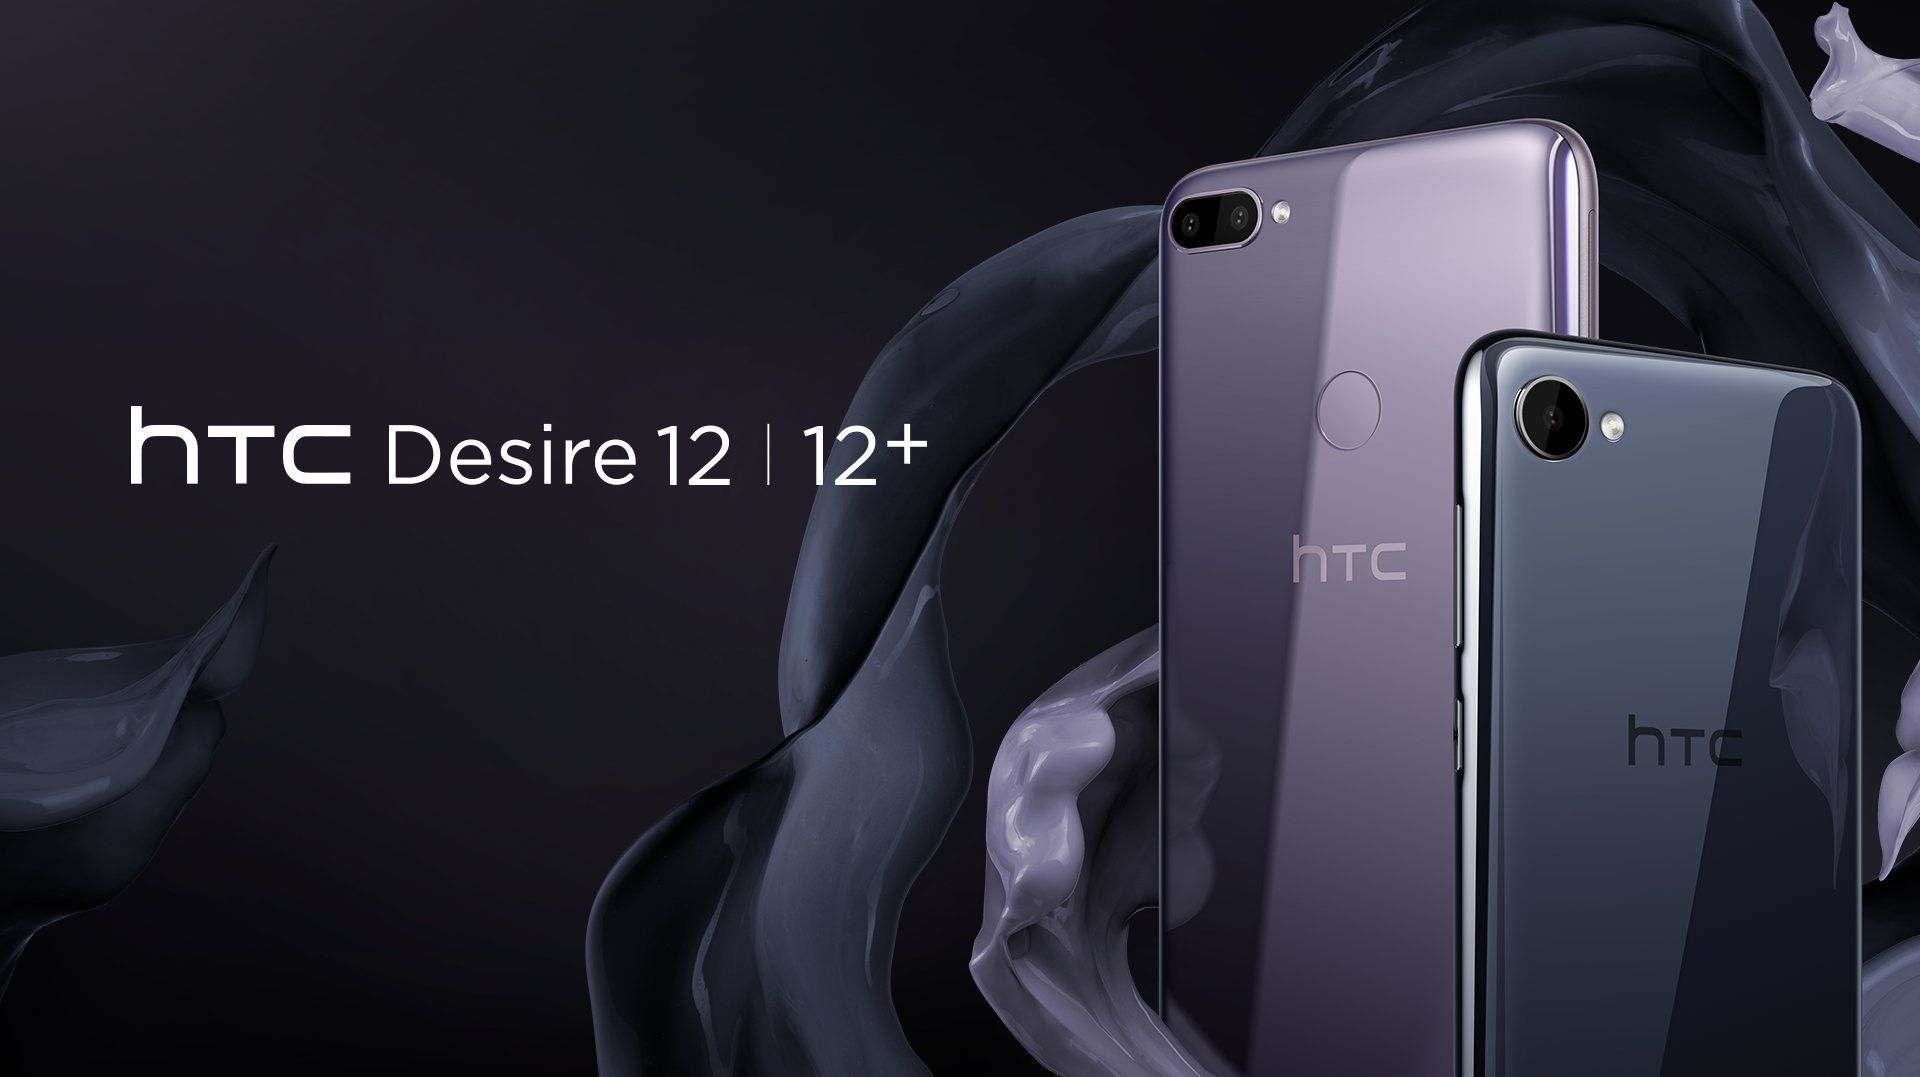 เปิดตัว HTC Desire 12 และ Desire 12+ มาพร้อมกล้องหน้าคู่ทั้ง 2 รุ่น